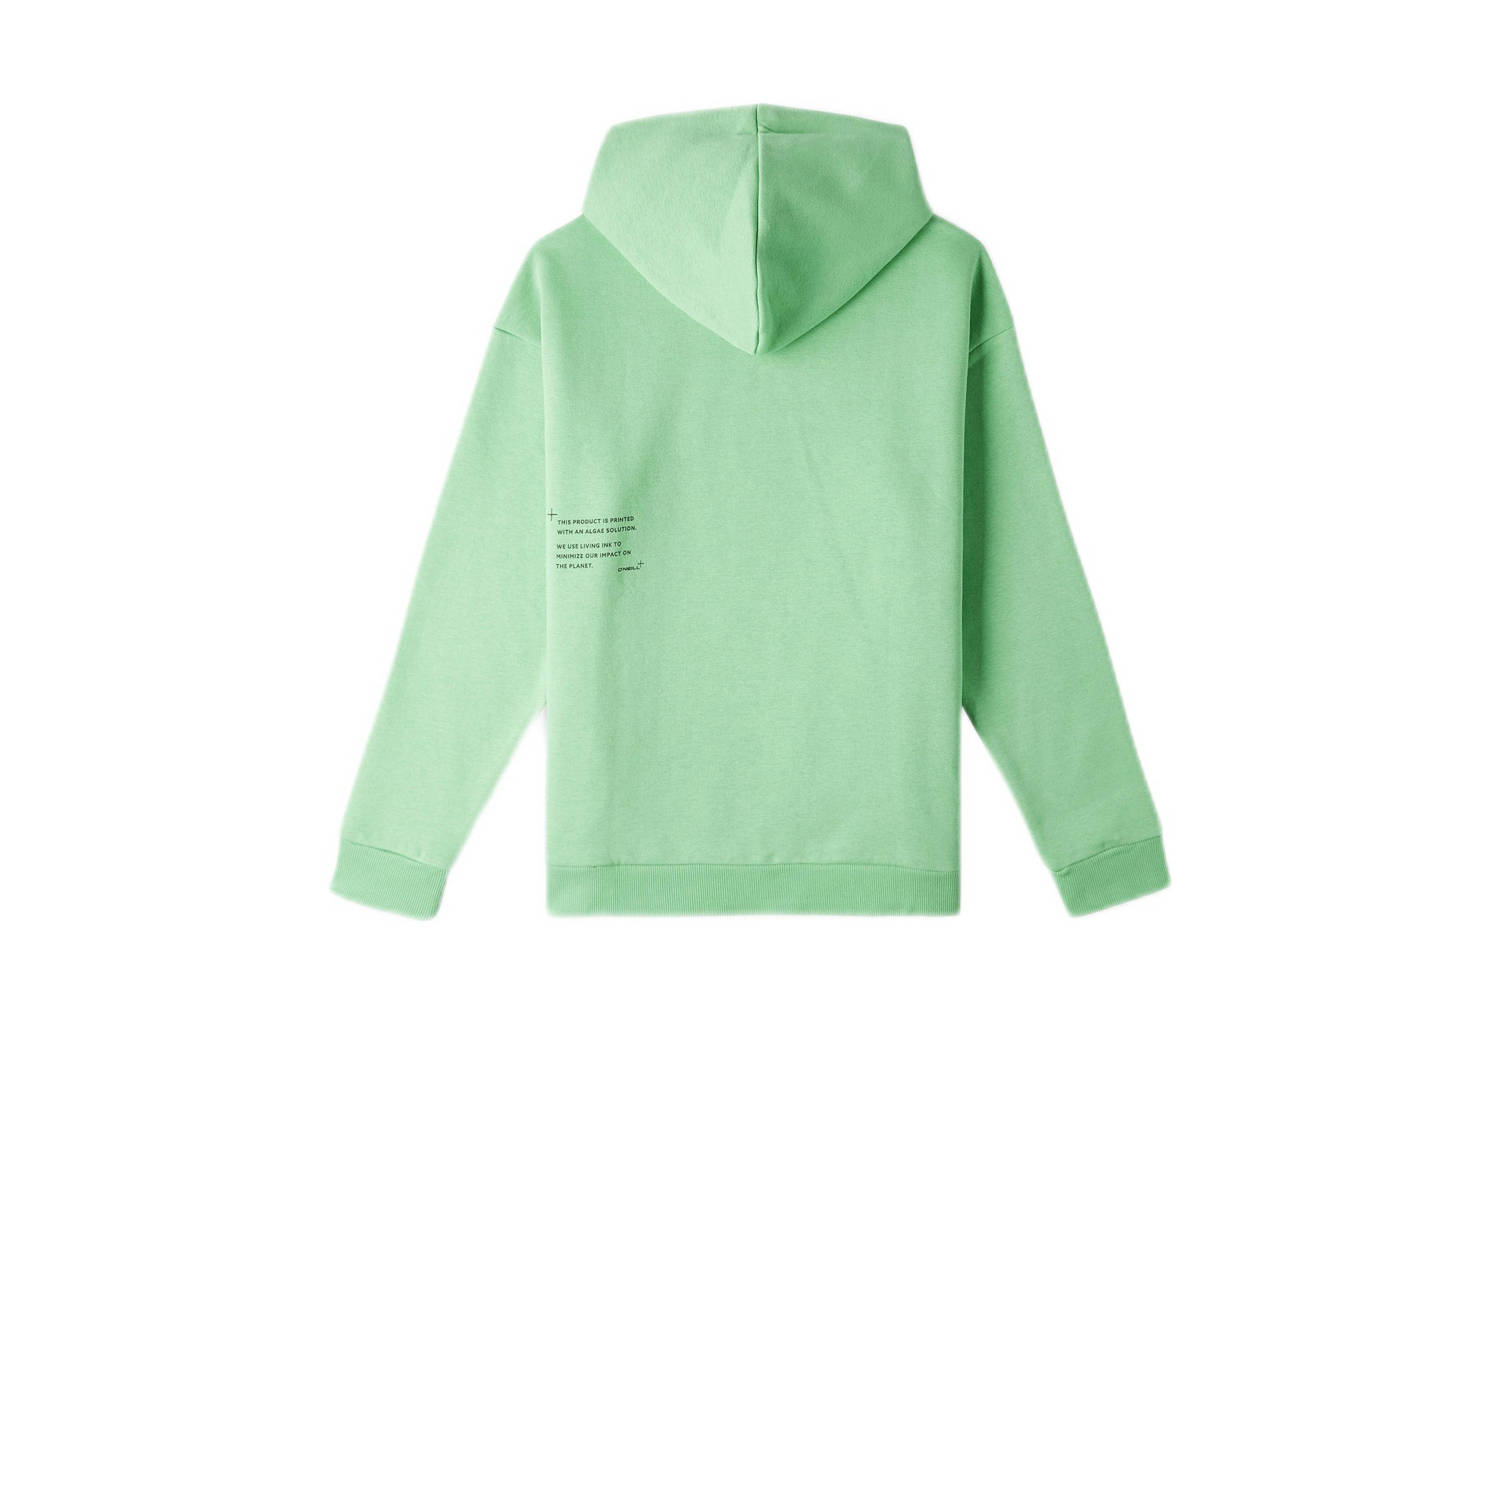 O'Neill hoodie met tekst lime groen